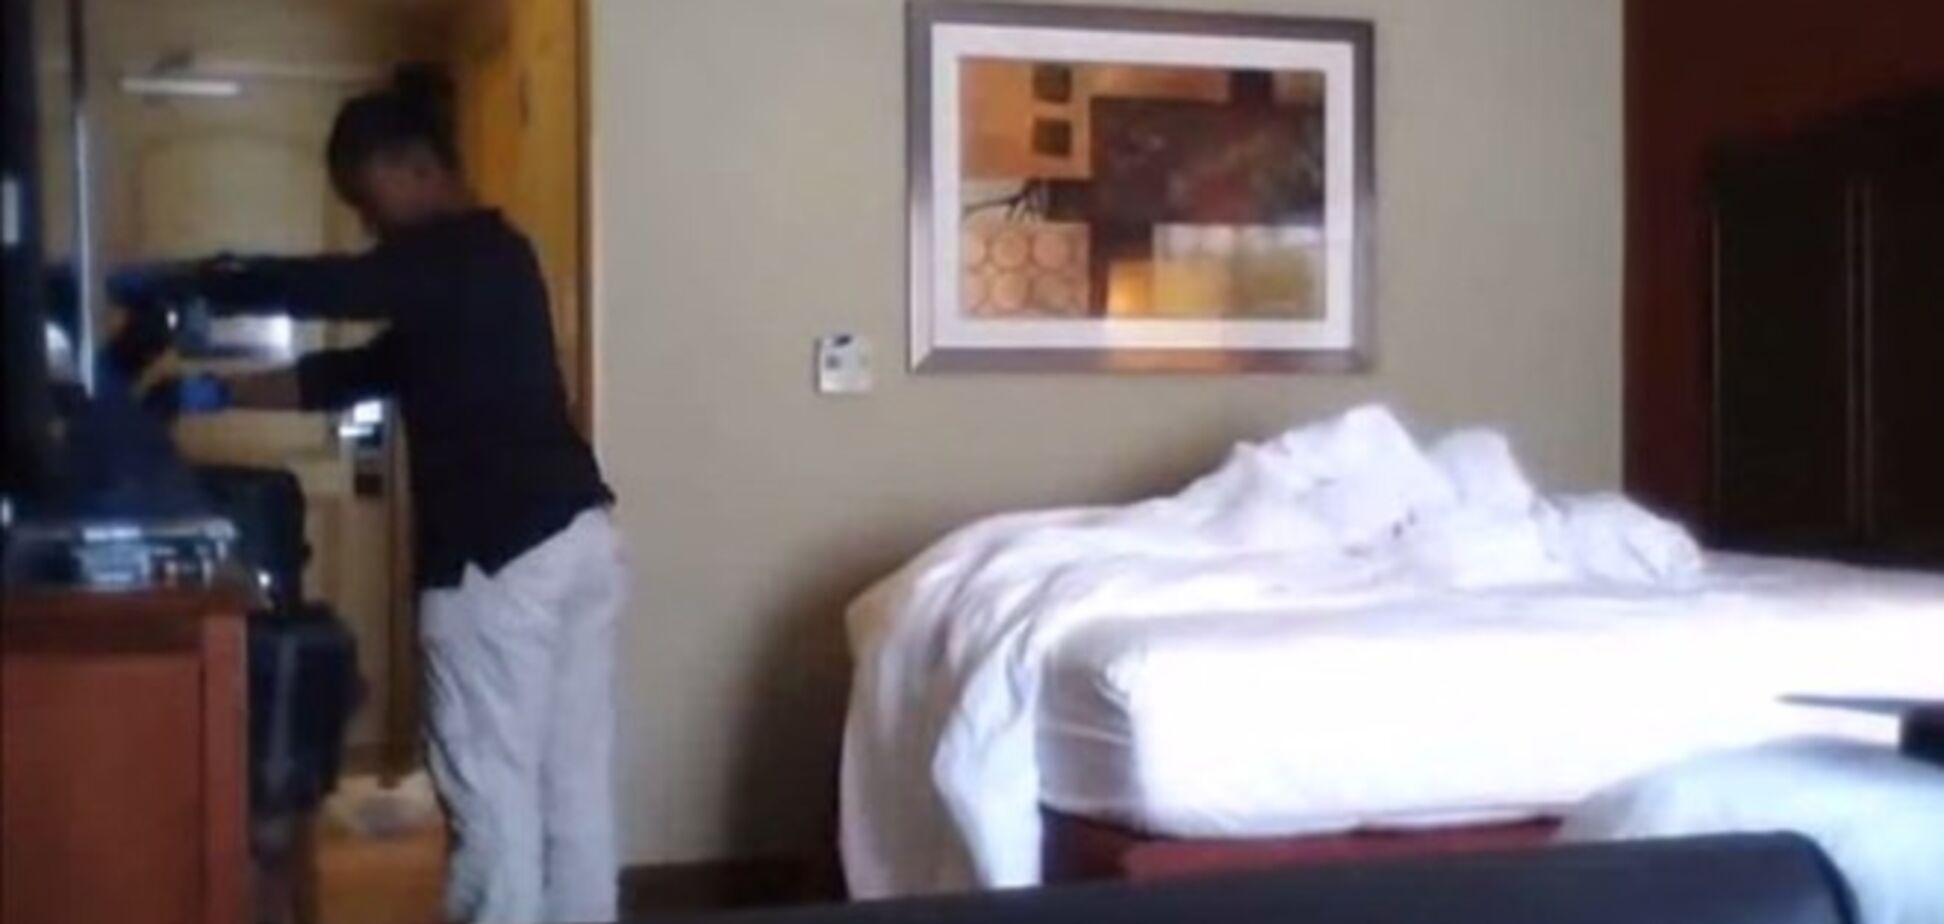 Турист записал на скрытую камеру уборщицу отеля, которая 'навела свои порядки' с его вещами